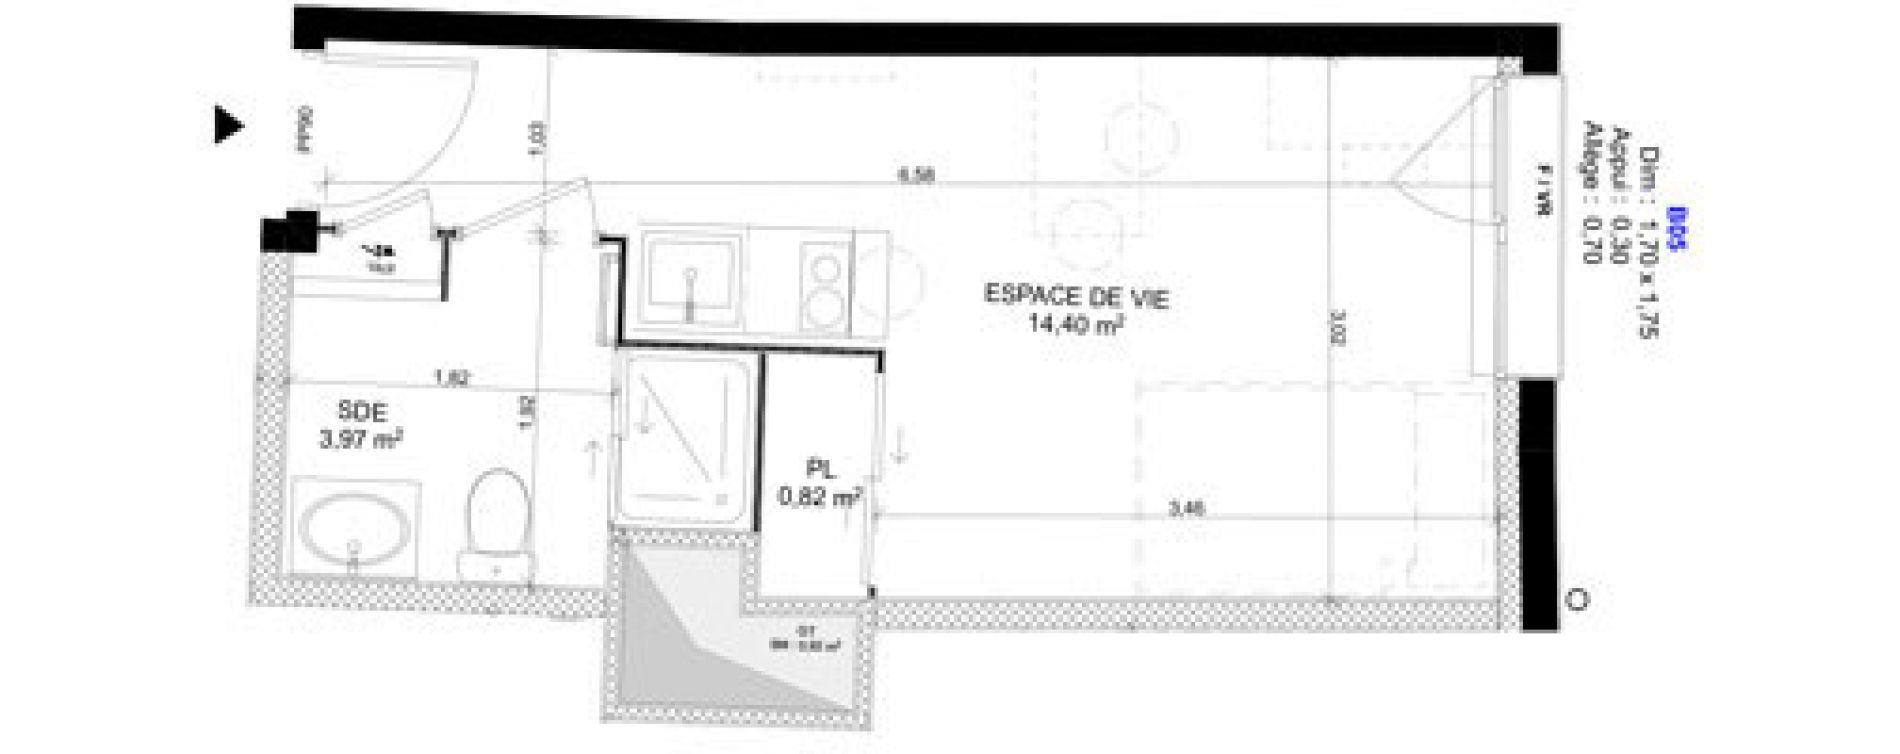 Appartement T1 meubl&eacute; de 19,19 m2 au Havre Sainte marie - saint leon